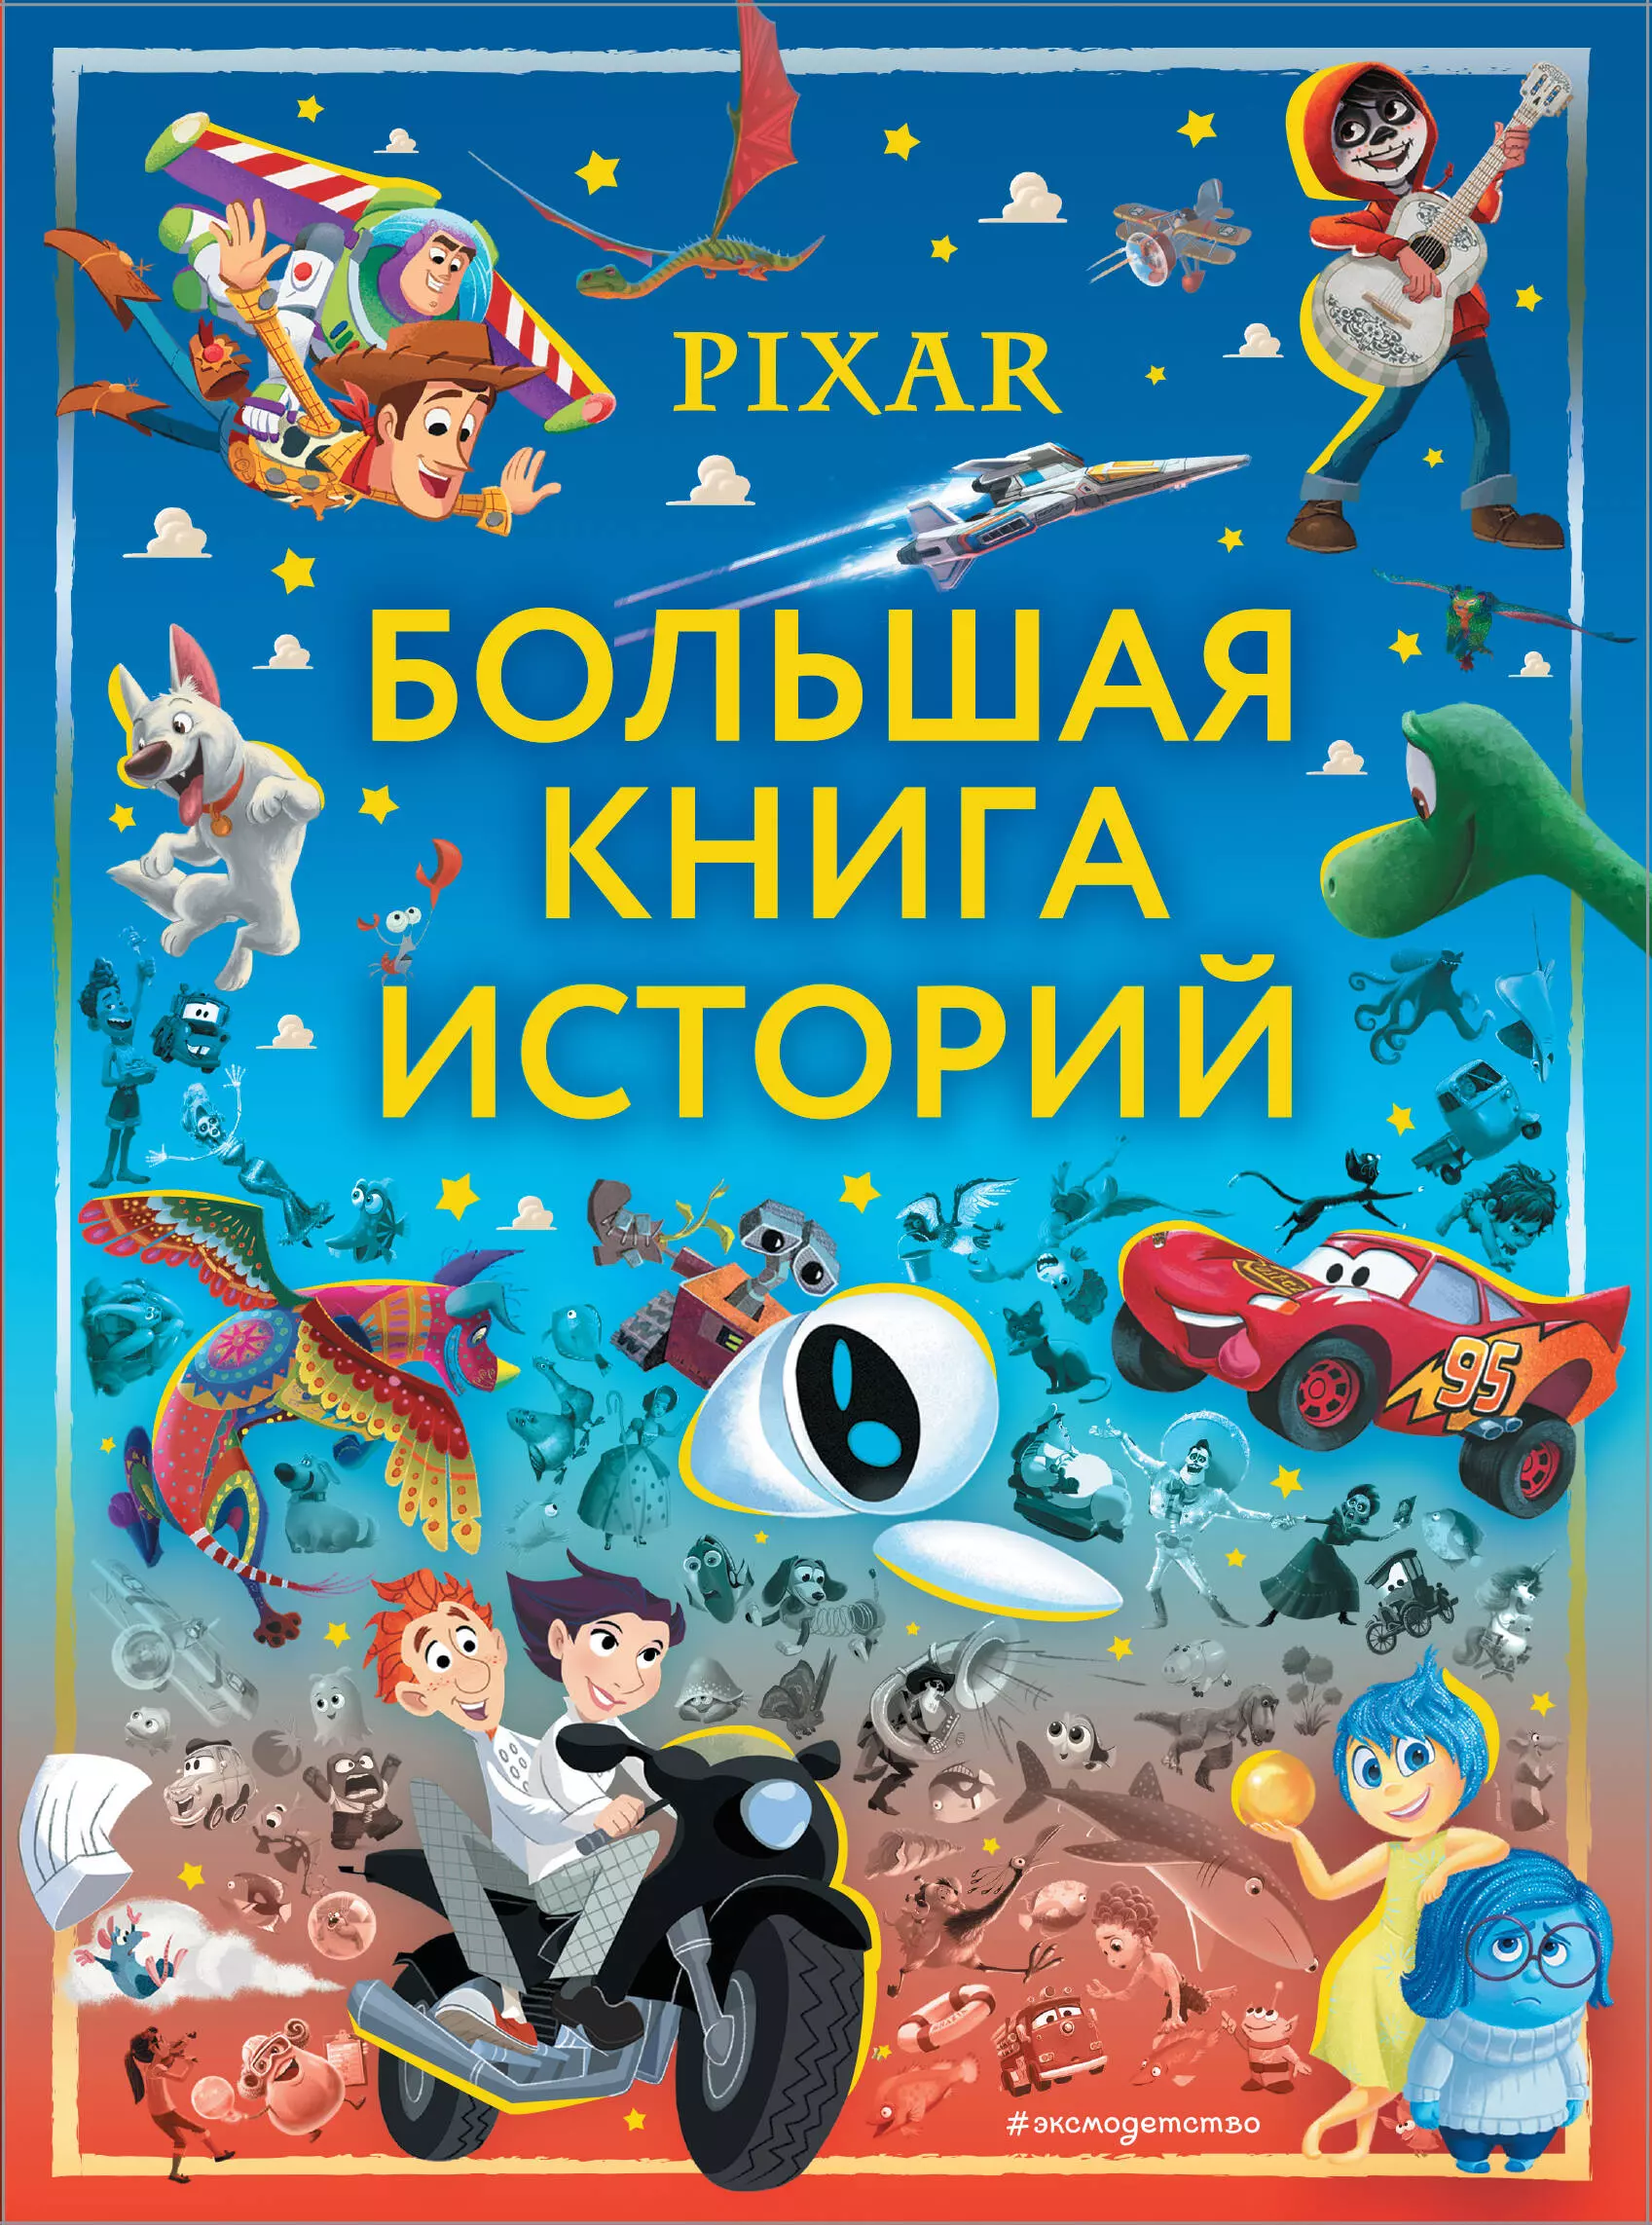 Саломатина Елена Ивановна - Pixar. Большая книга историй